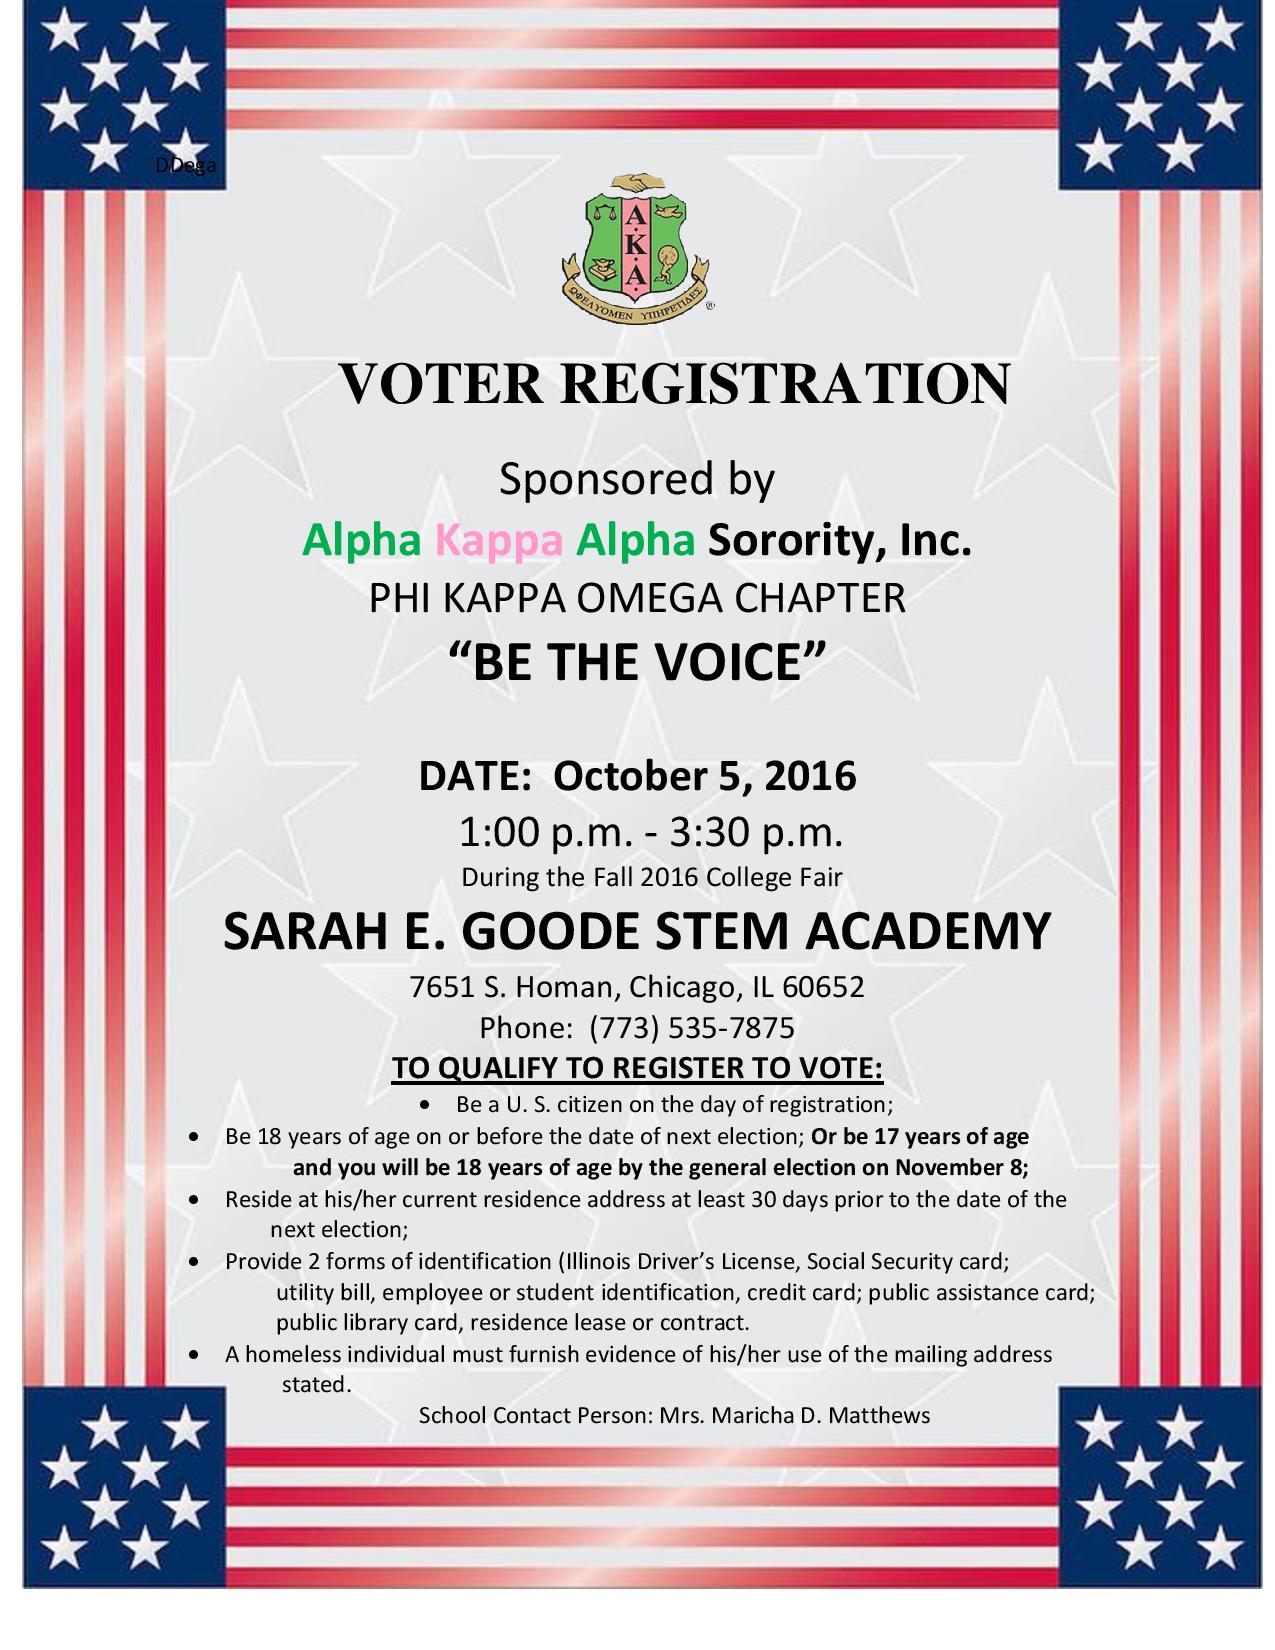 Goode STEM Academy Voter Registration